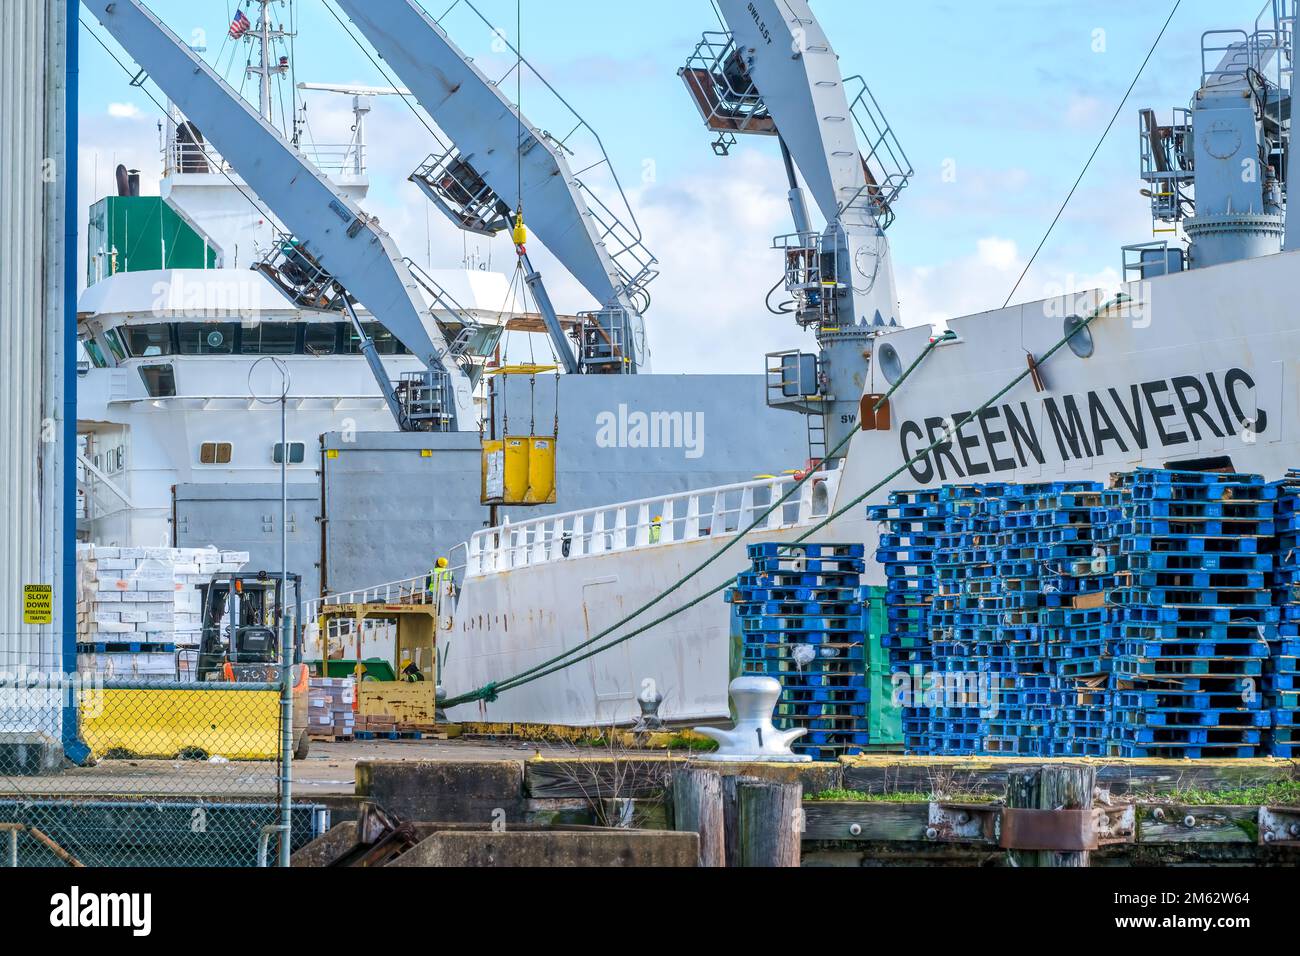 NEW ORLEANS, LA, USA - 28. DEZEMBER 2022: Green Maveric Kühlfrachtschiff mit Kränen, die Fracht laden und Paletten am Kai stapeln Stockfoto